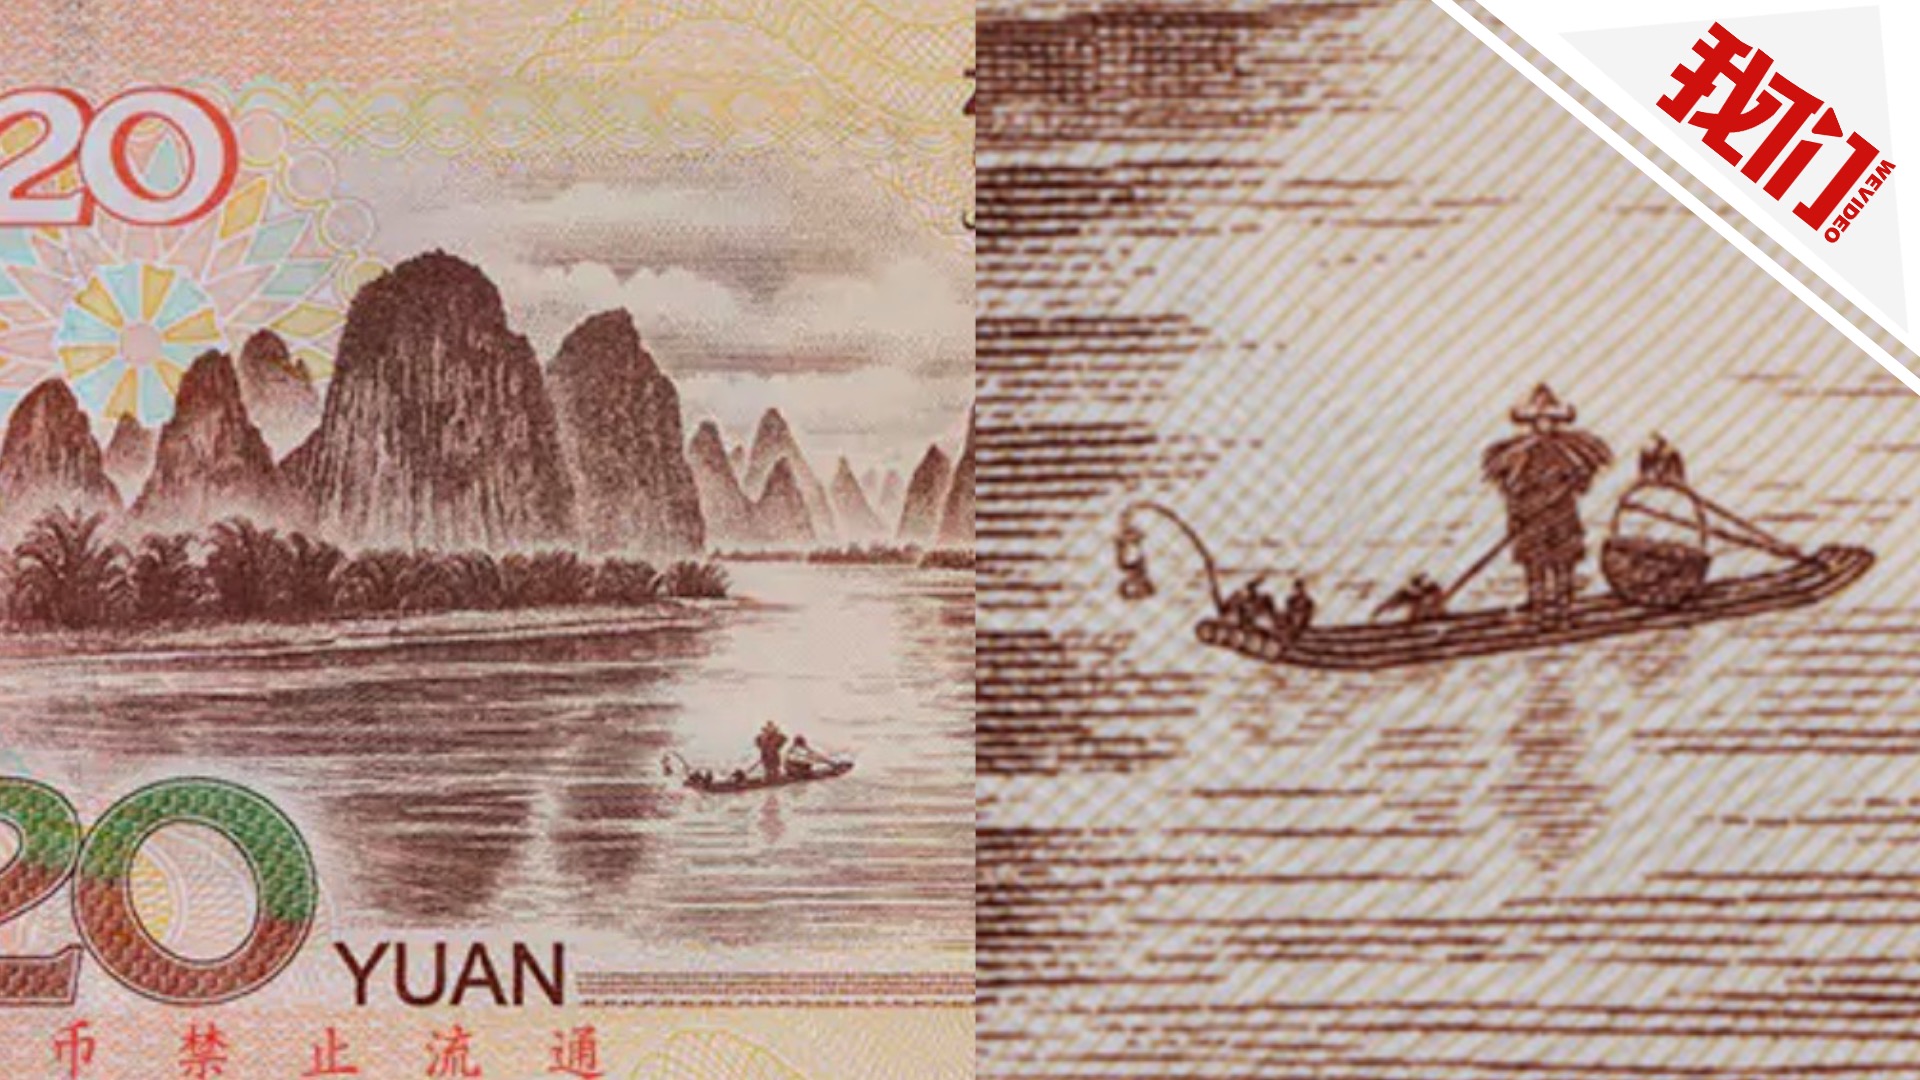 1999年人民币20元图片图片